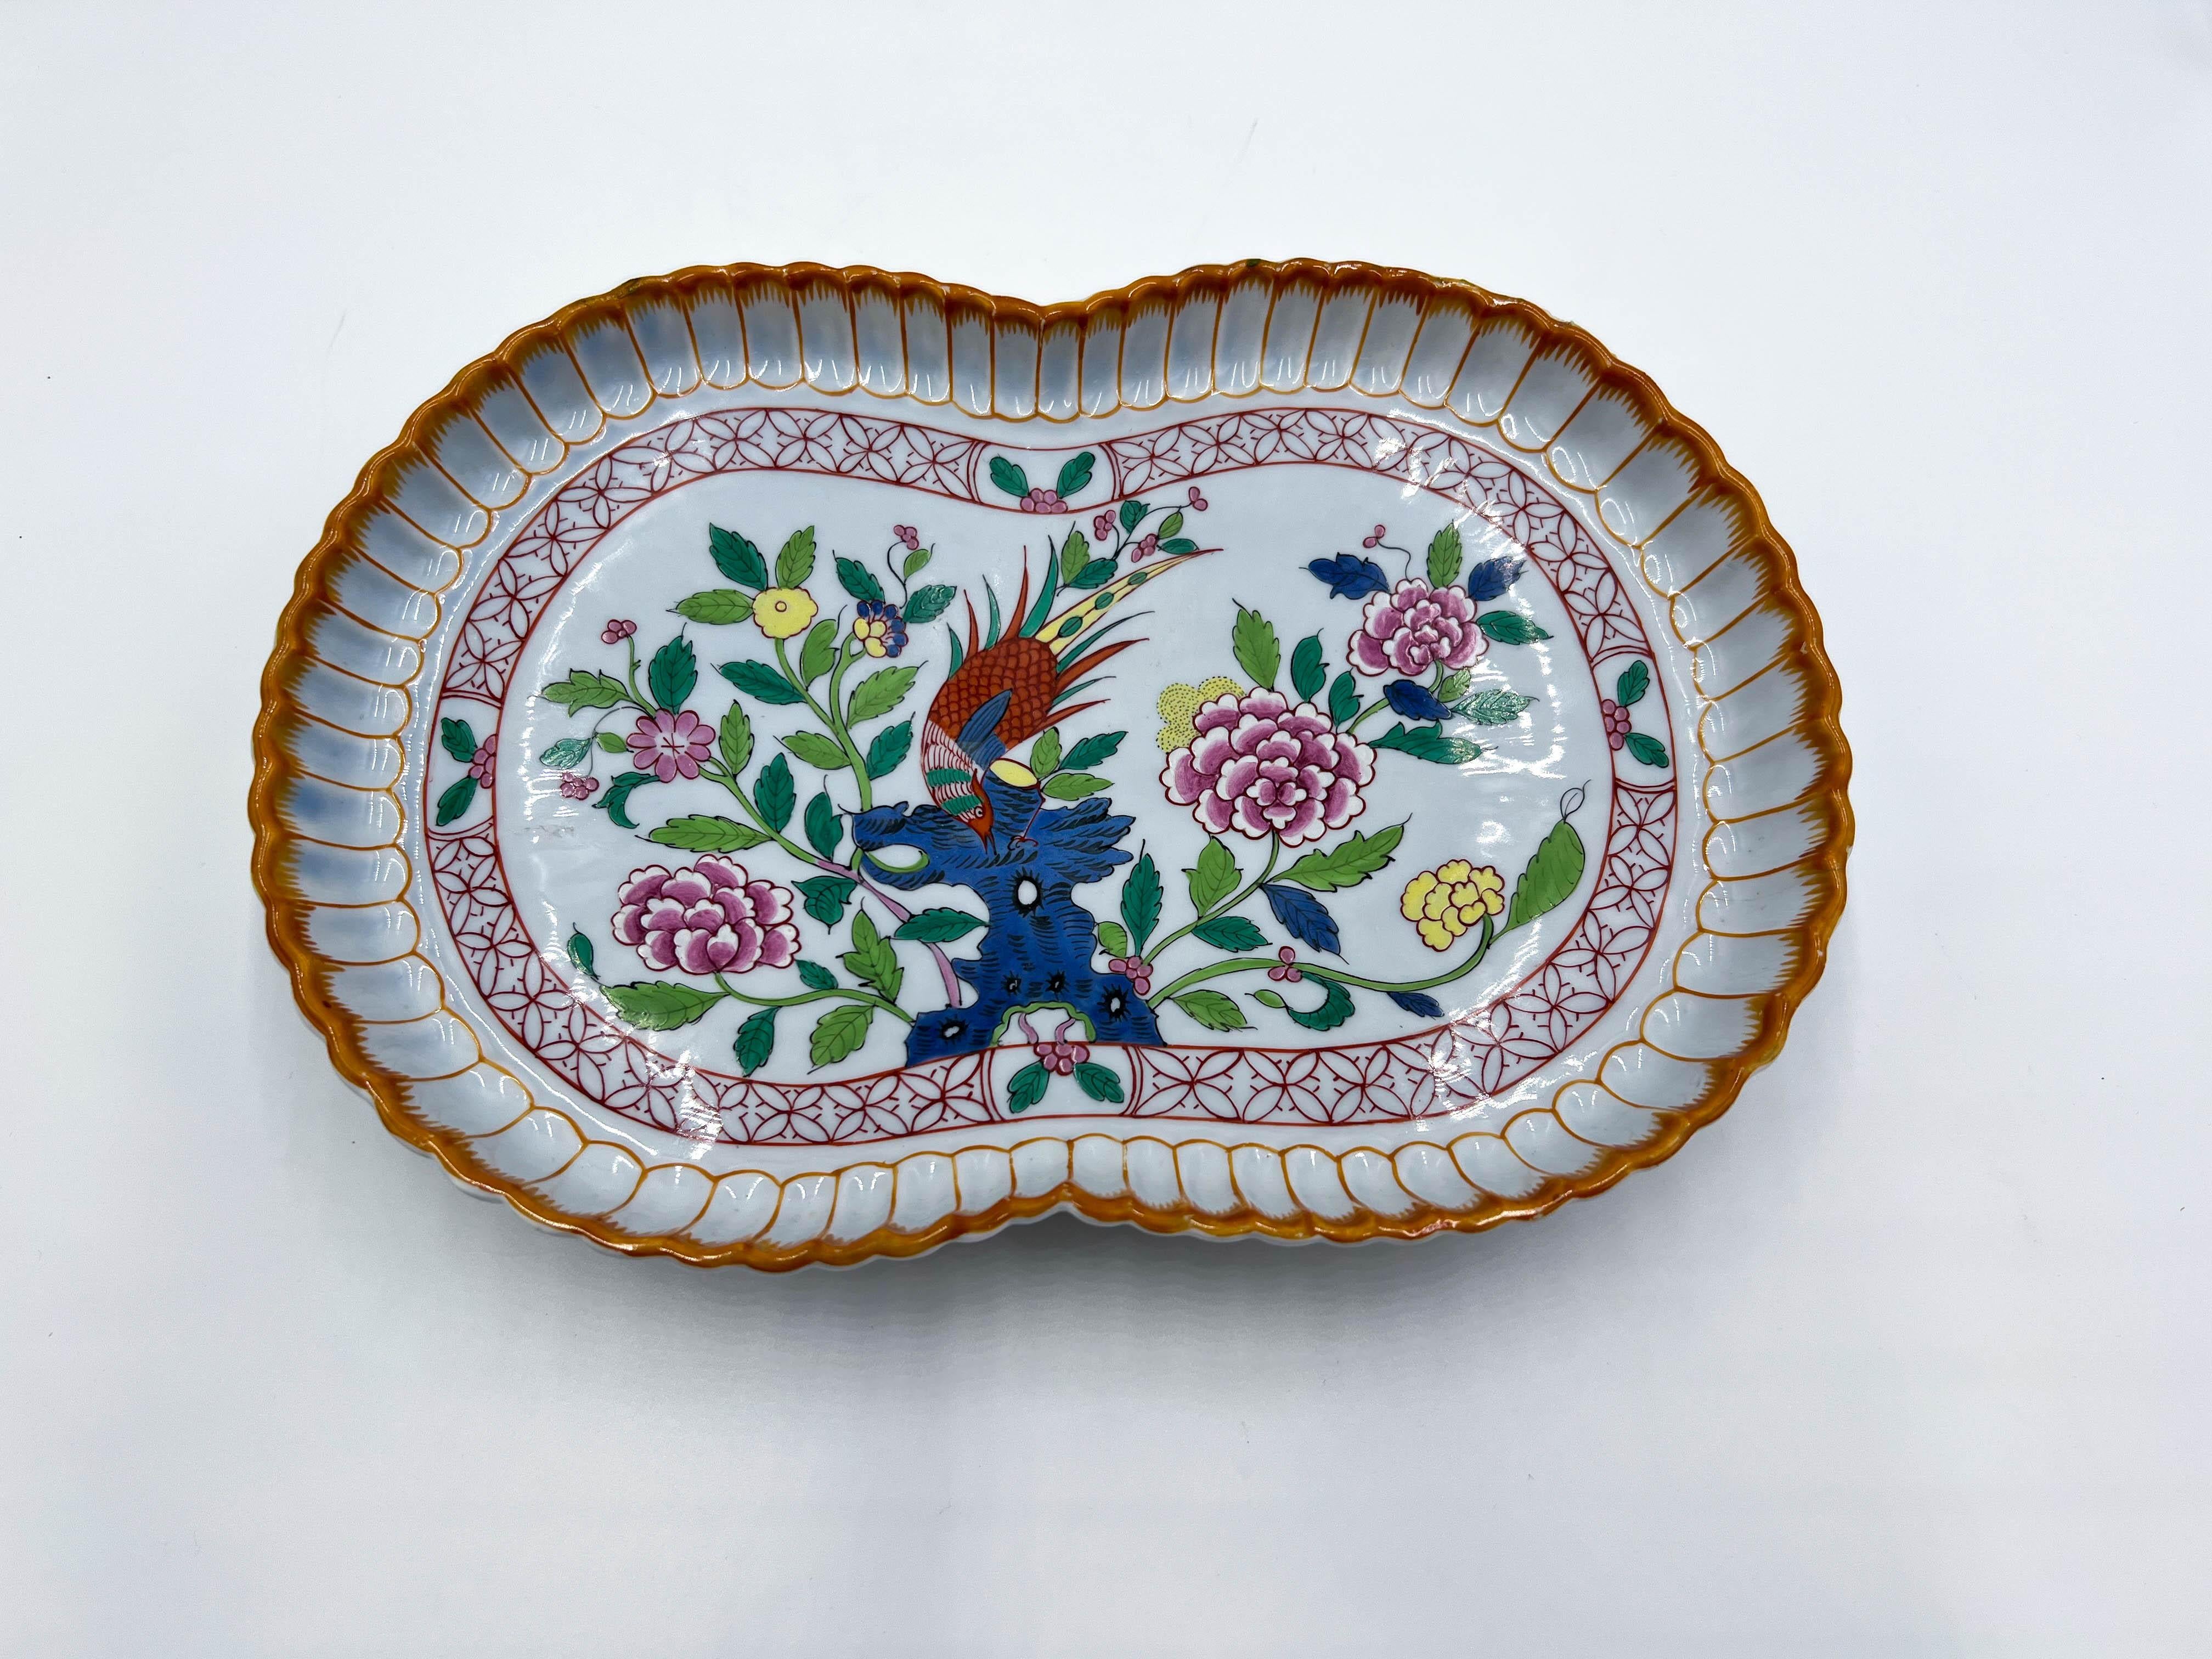  Herend-Porzellan ist bekannt für seine exquisite Handwerkskunst und seine komplizierten Designs. Dieses Stück sticht jedoch selbst unter den bemerkenswerten Kreationen der Marke hervor.

Die leuchtenden Farben und das Blumen- und Fasanenmuster